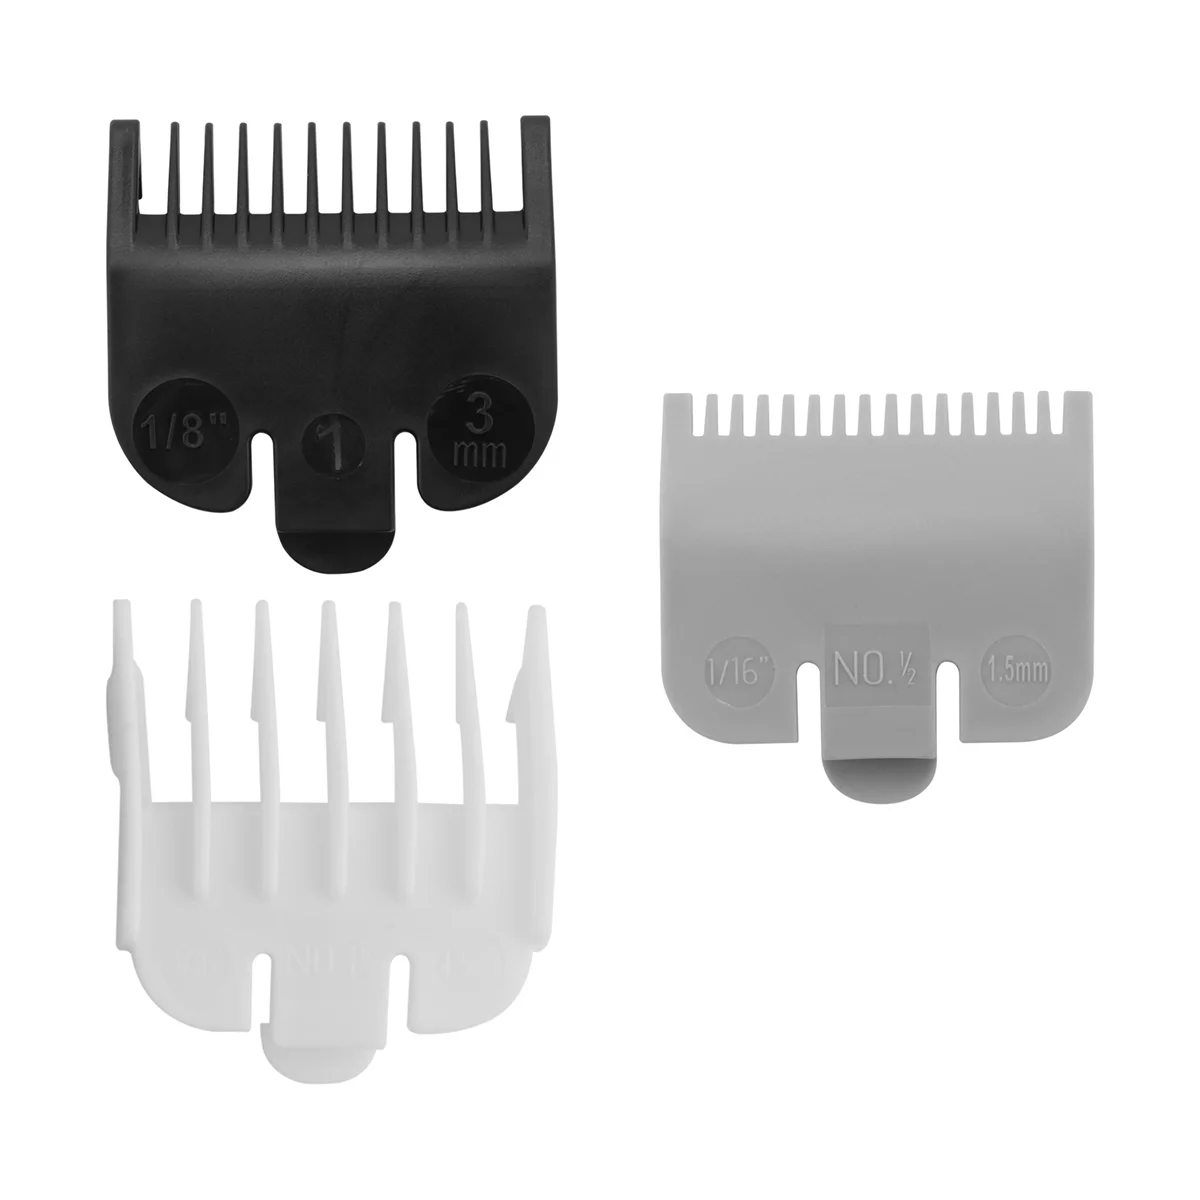 

3 Pieces of Universal Hair Clipper Limit Comb Limit Comb Haircut Tools Electric Clipper Caliper 1.5mm / 3mm / 4.5mm